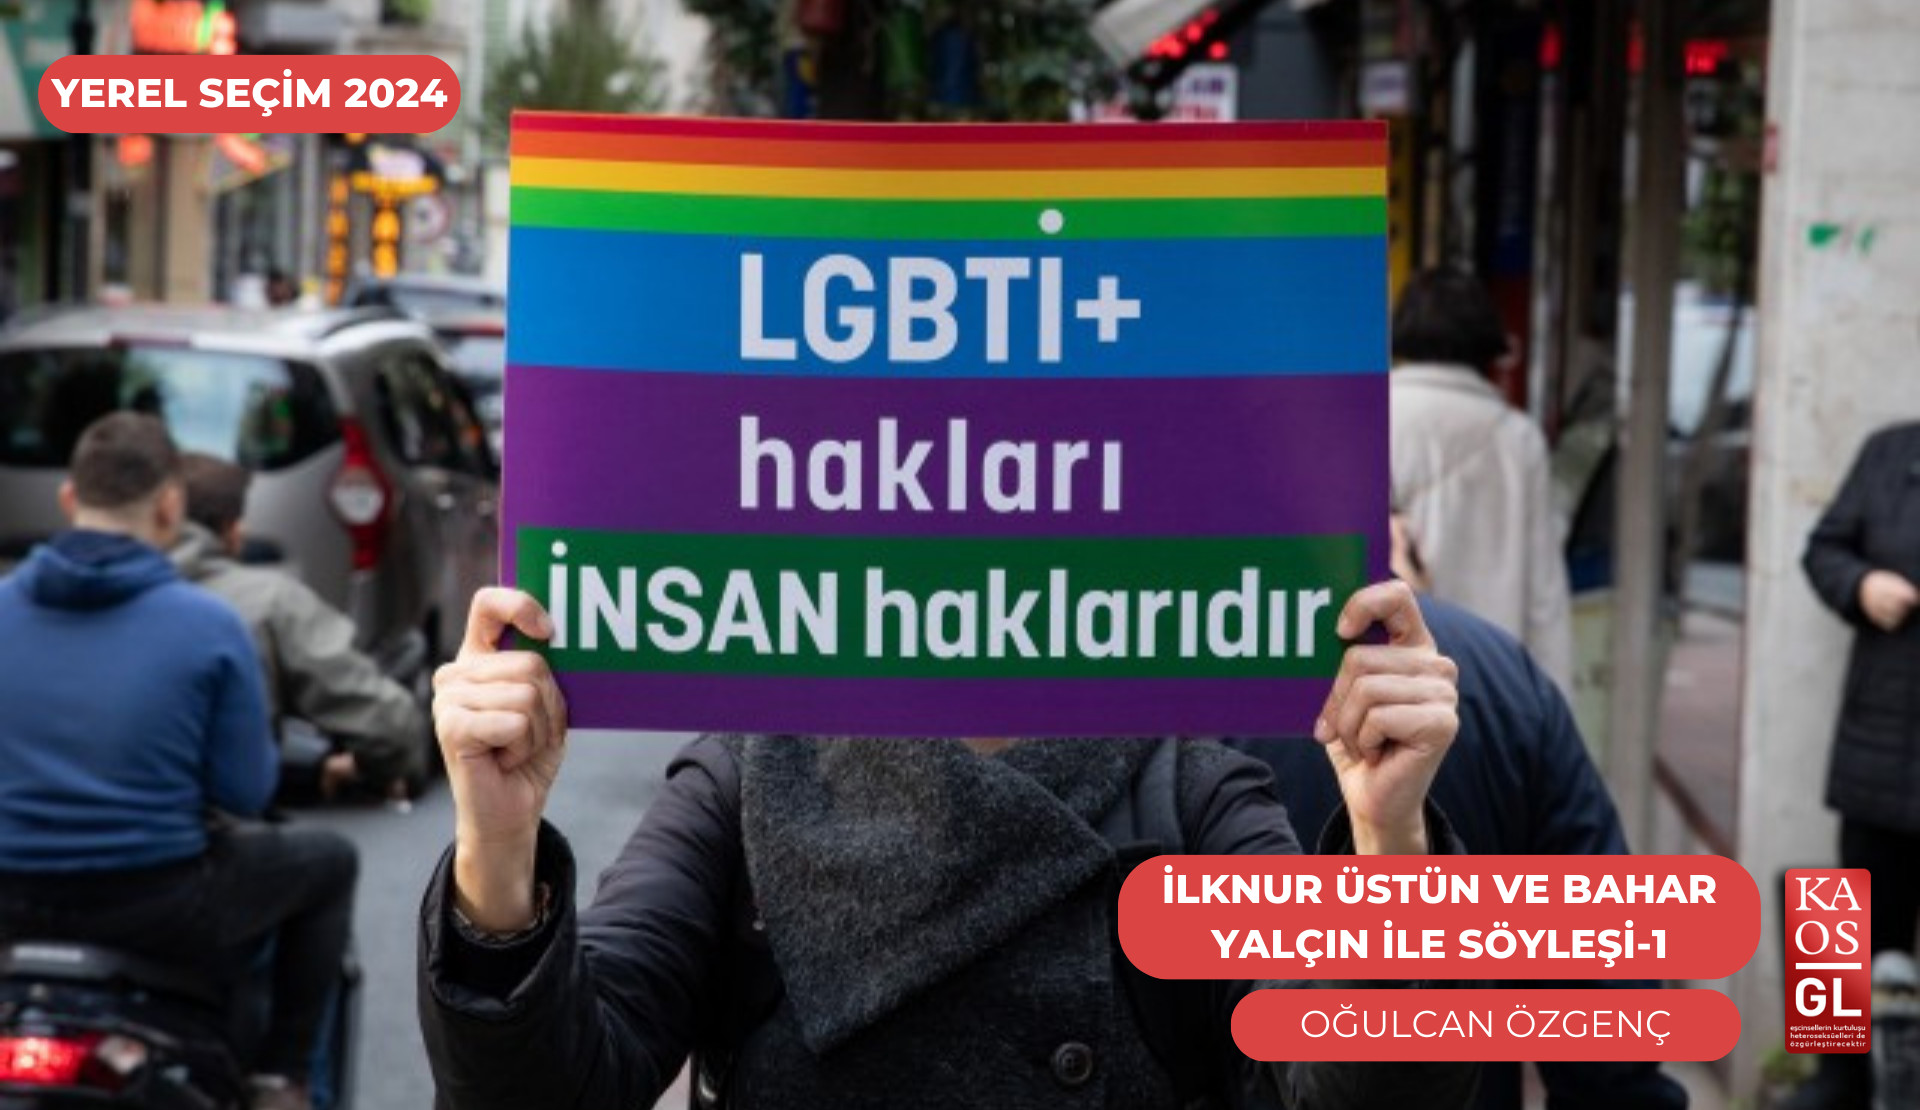 “Bazı belediyeler, LGBTİ+’lara sundukları hizmetleri duyurmuyor” | Kaos GL - LGBTİ+ Haber Portalı